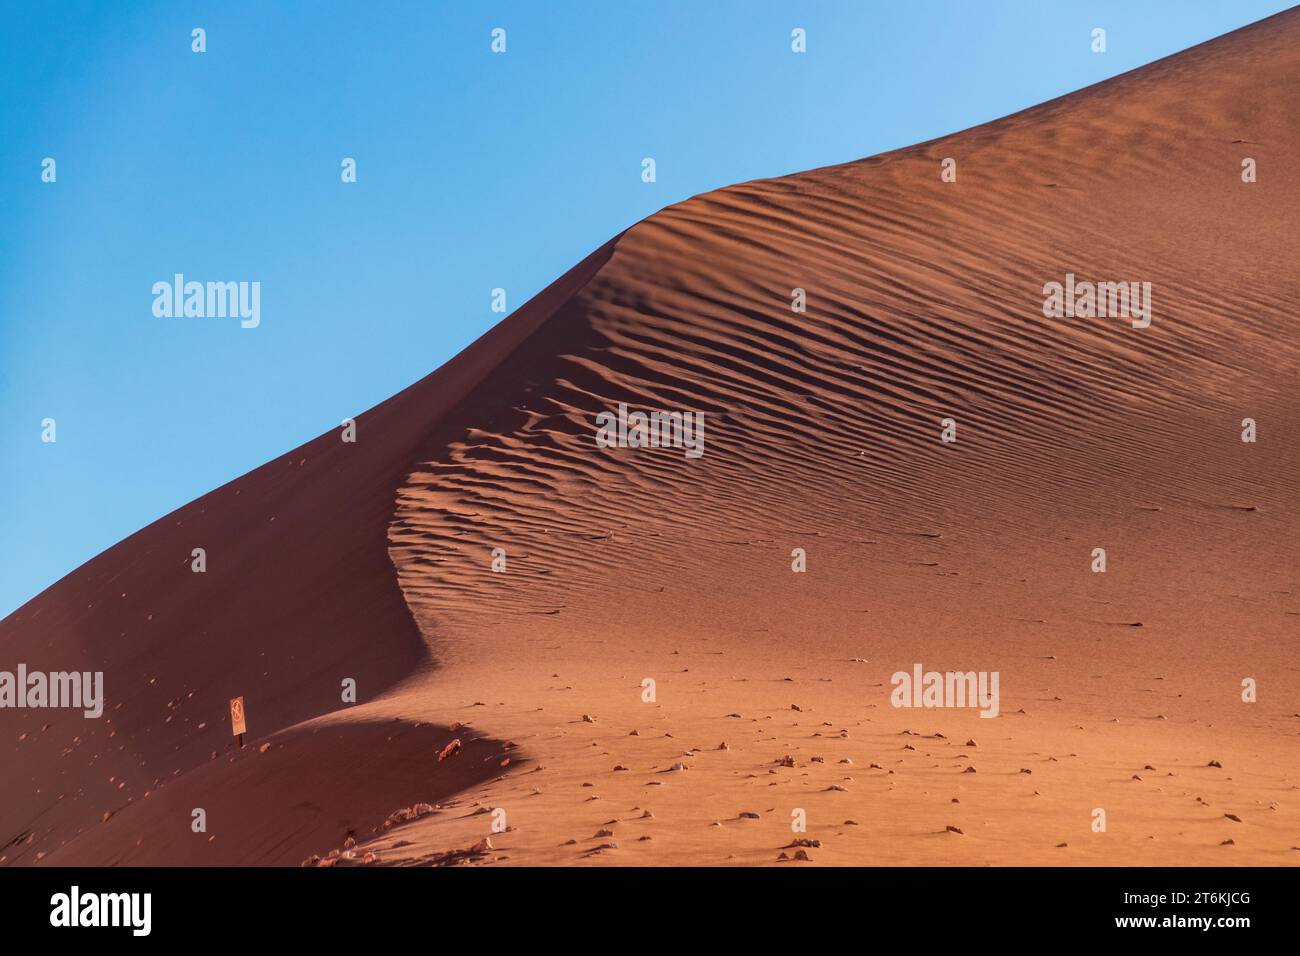 Sanddünen im Valle de la Luna in der Atacama-Wüste, Chile. Die Sonne hebt Wellen im Sand hervor, der vom Wind erzeugt wird. Stockfoto